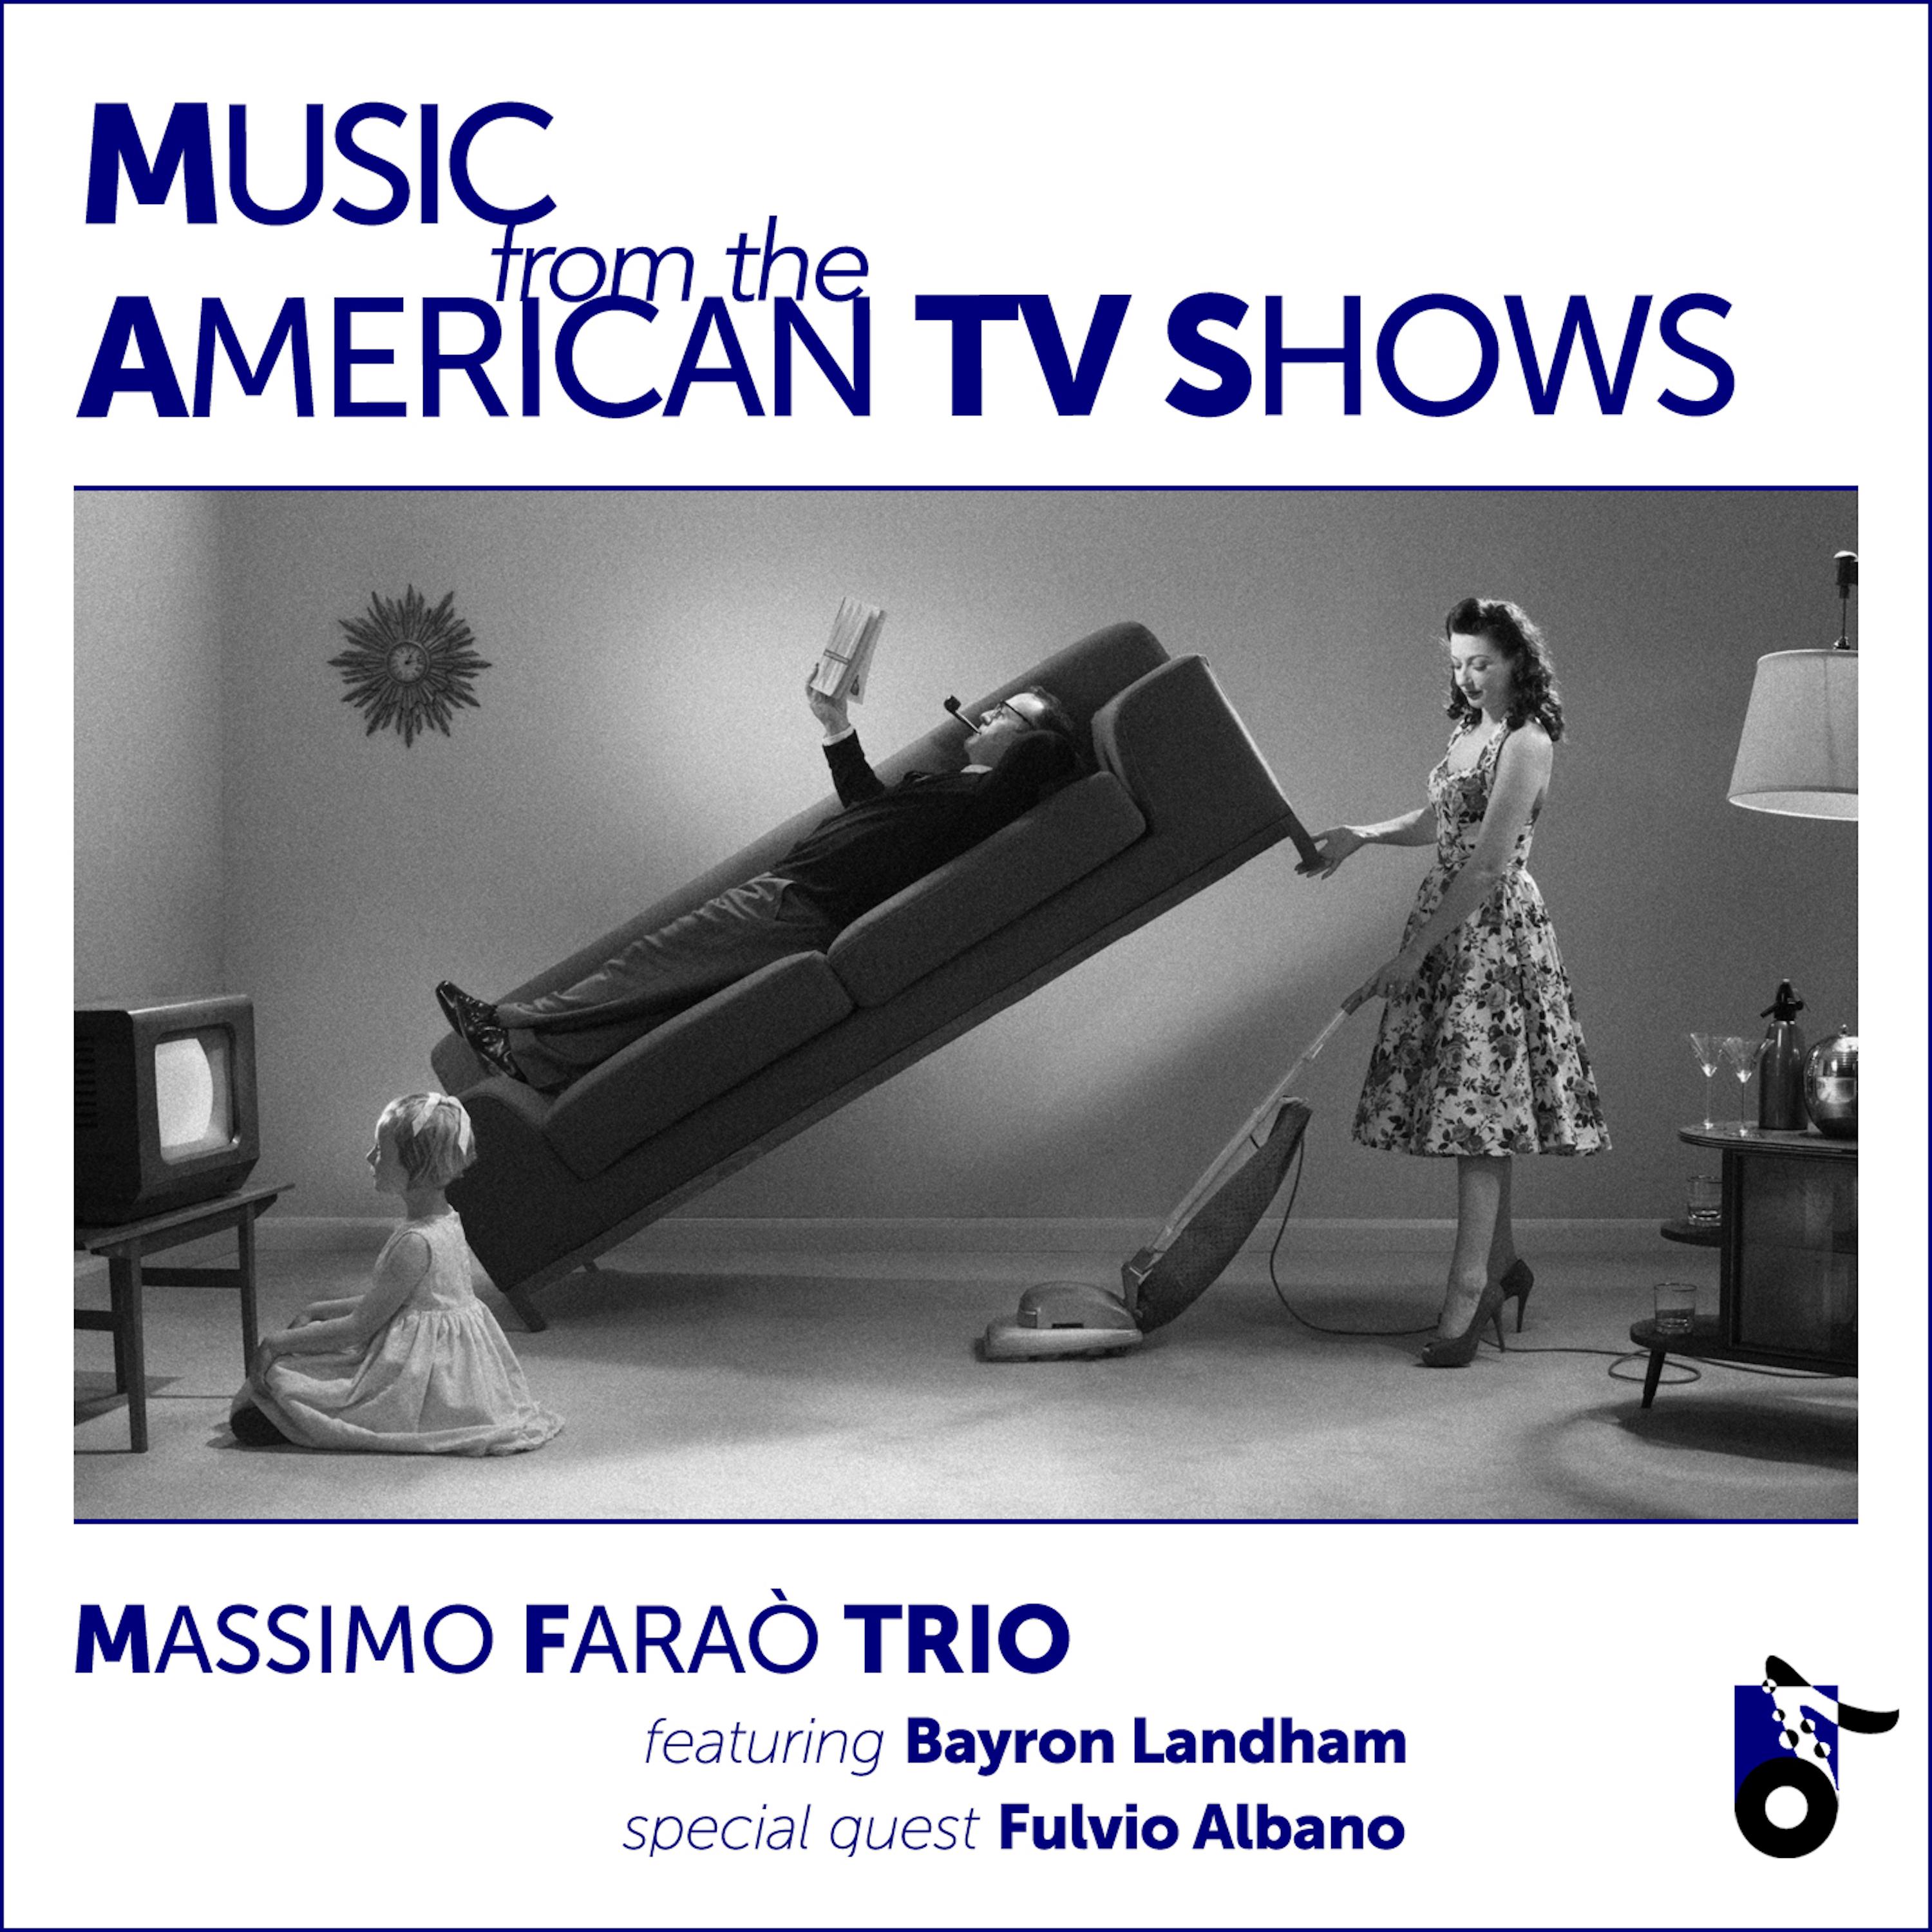 Massimo Farao' Trio - Murder She Wrote